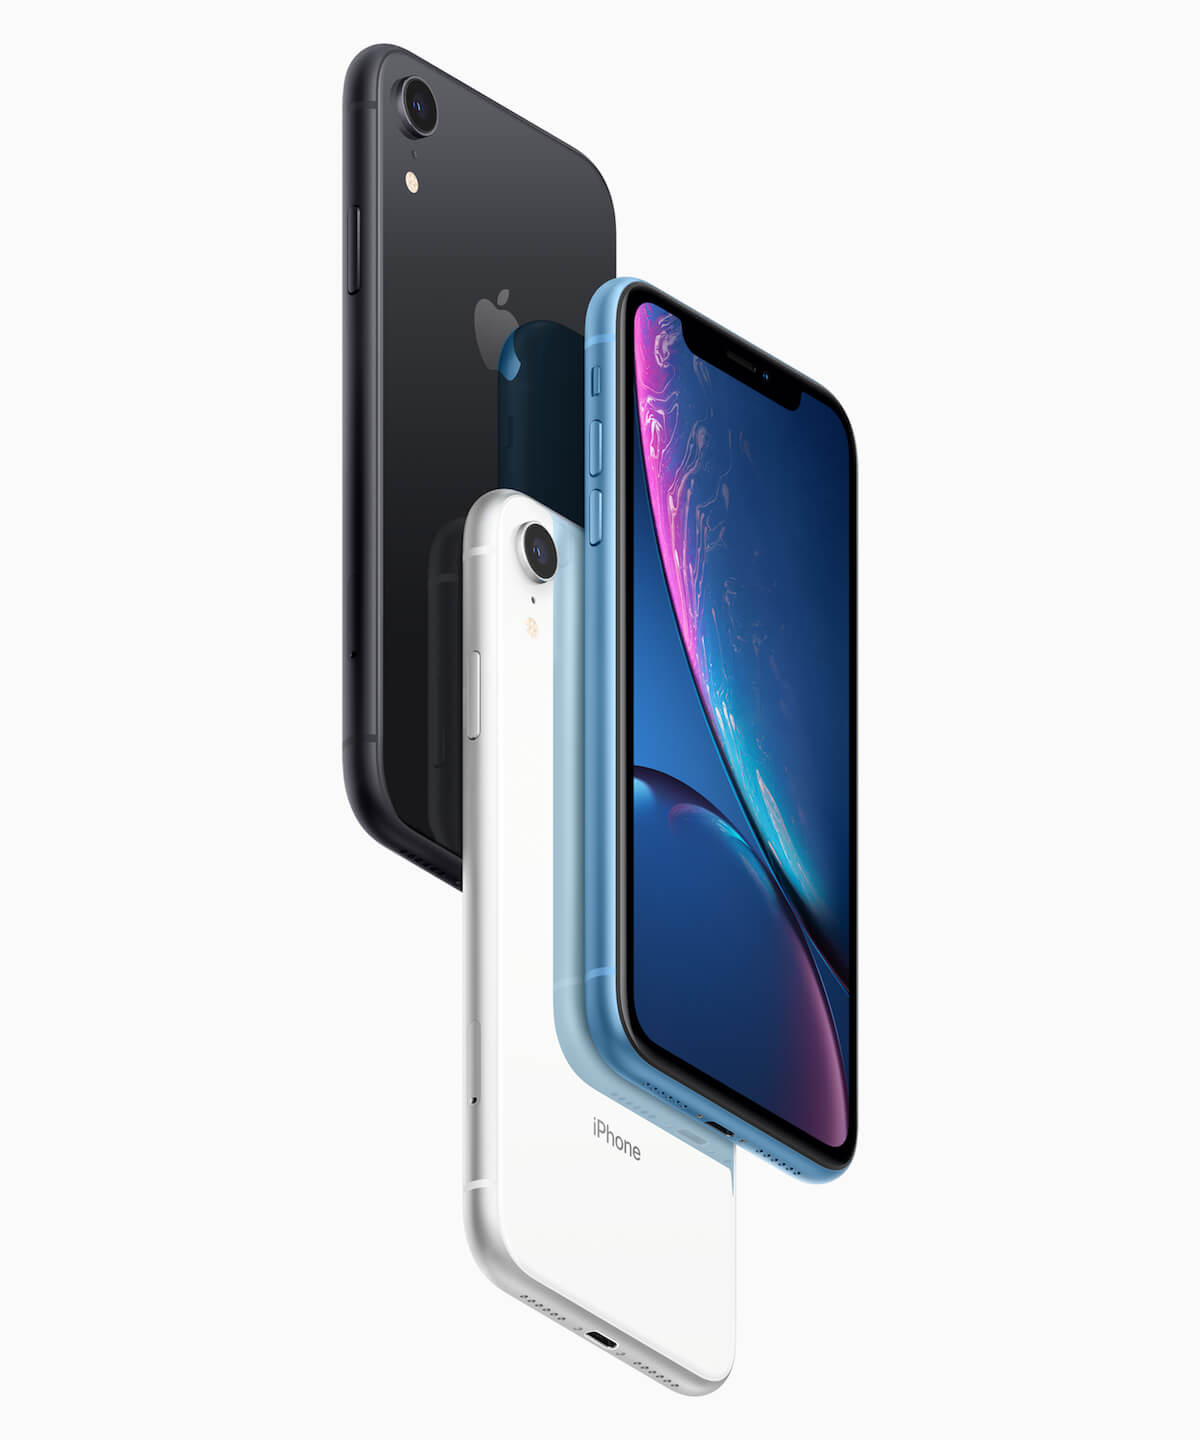 Iphone Xr Apple公式オンラインストアでの初回出荷分が完売 人気色はレッドとホワイト Qetic